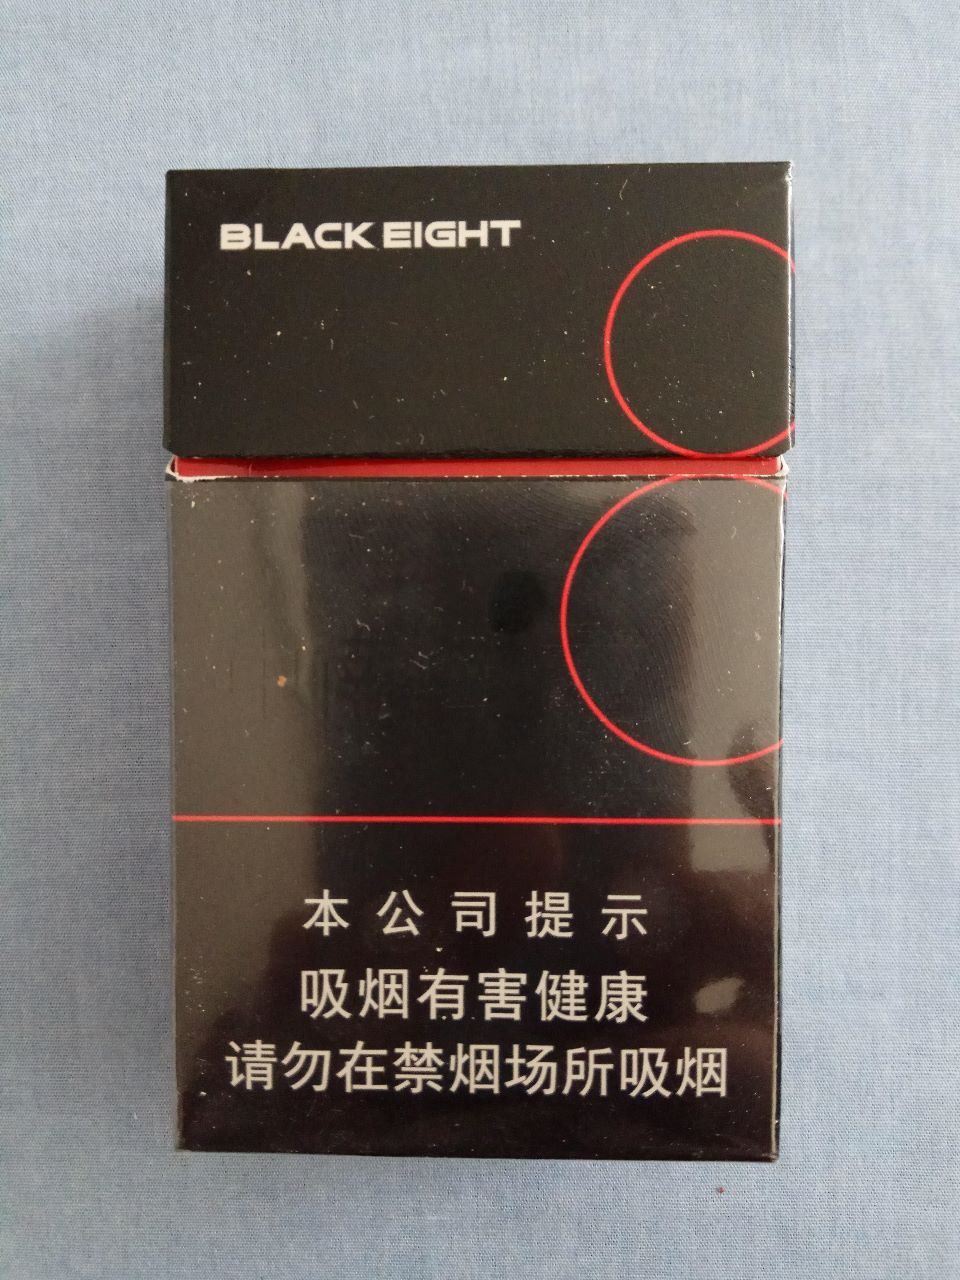 中南海(黑8,16版尽早戒烟)-se57436852-烟标/烟盒